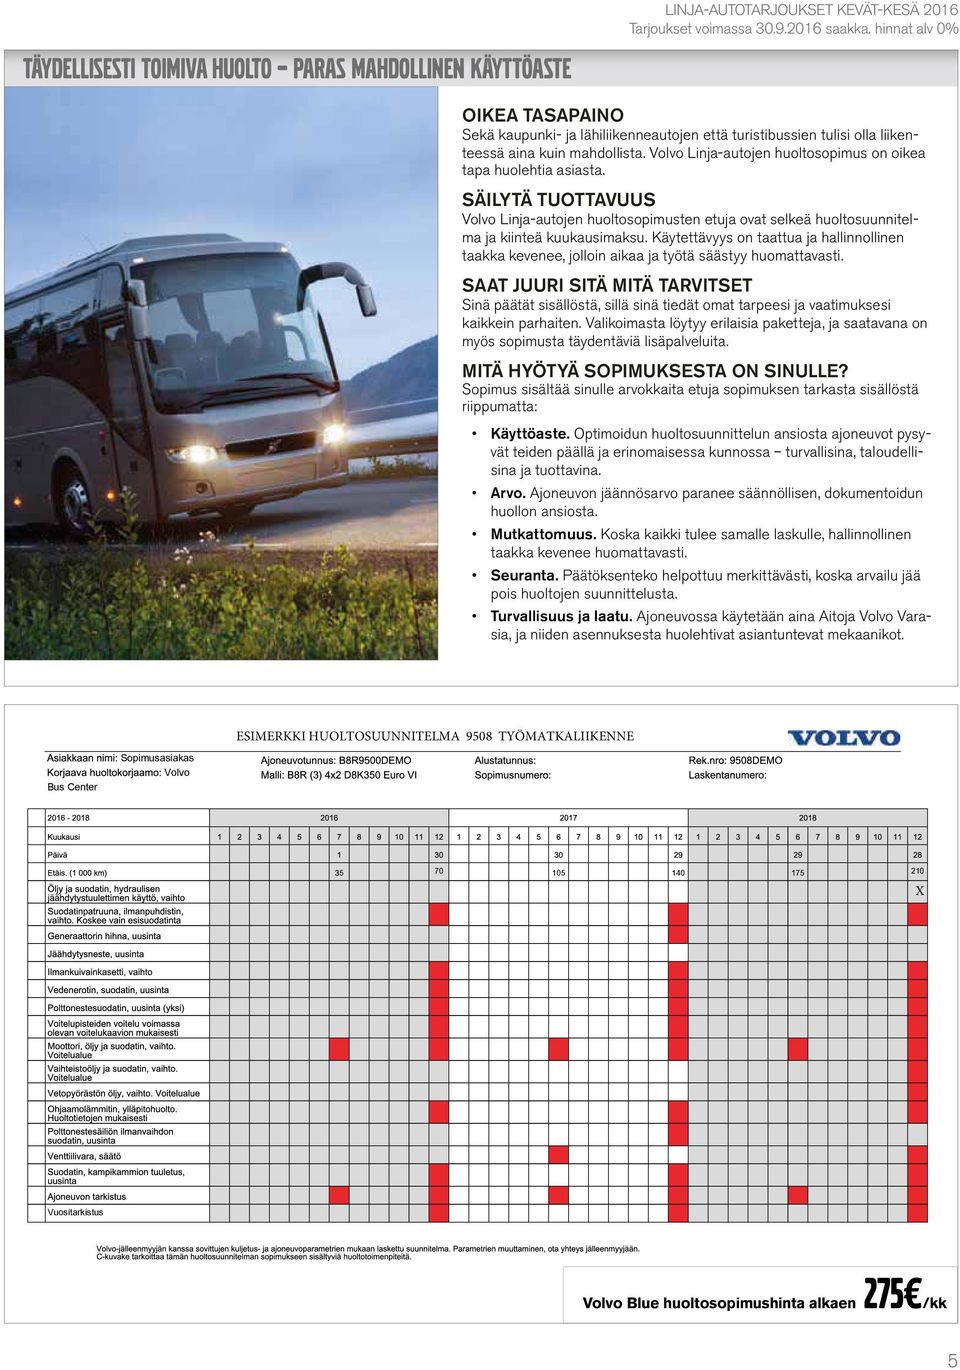 Volvo Linja-autojen huoltosopimus on oikea tapa huolehtia asiasta. SÄILYTÄ TUOTTAVUUS Volvo Linja-autojen huoltosopimusten etuja ovat selkeä huoltosuunnitelma ja kiinteä kuukausimaksu.